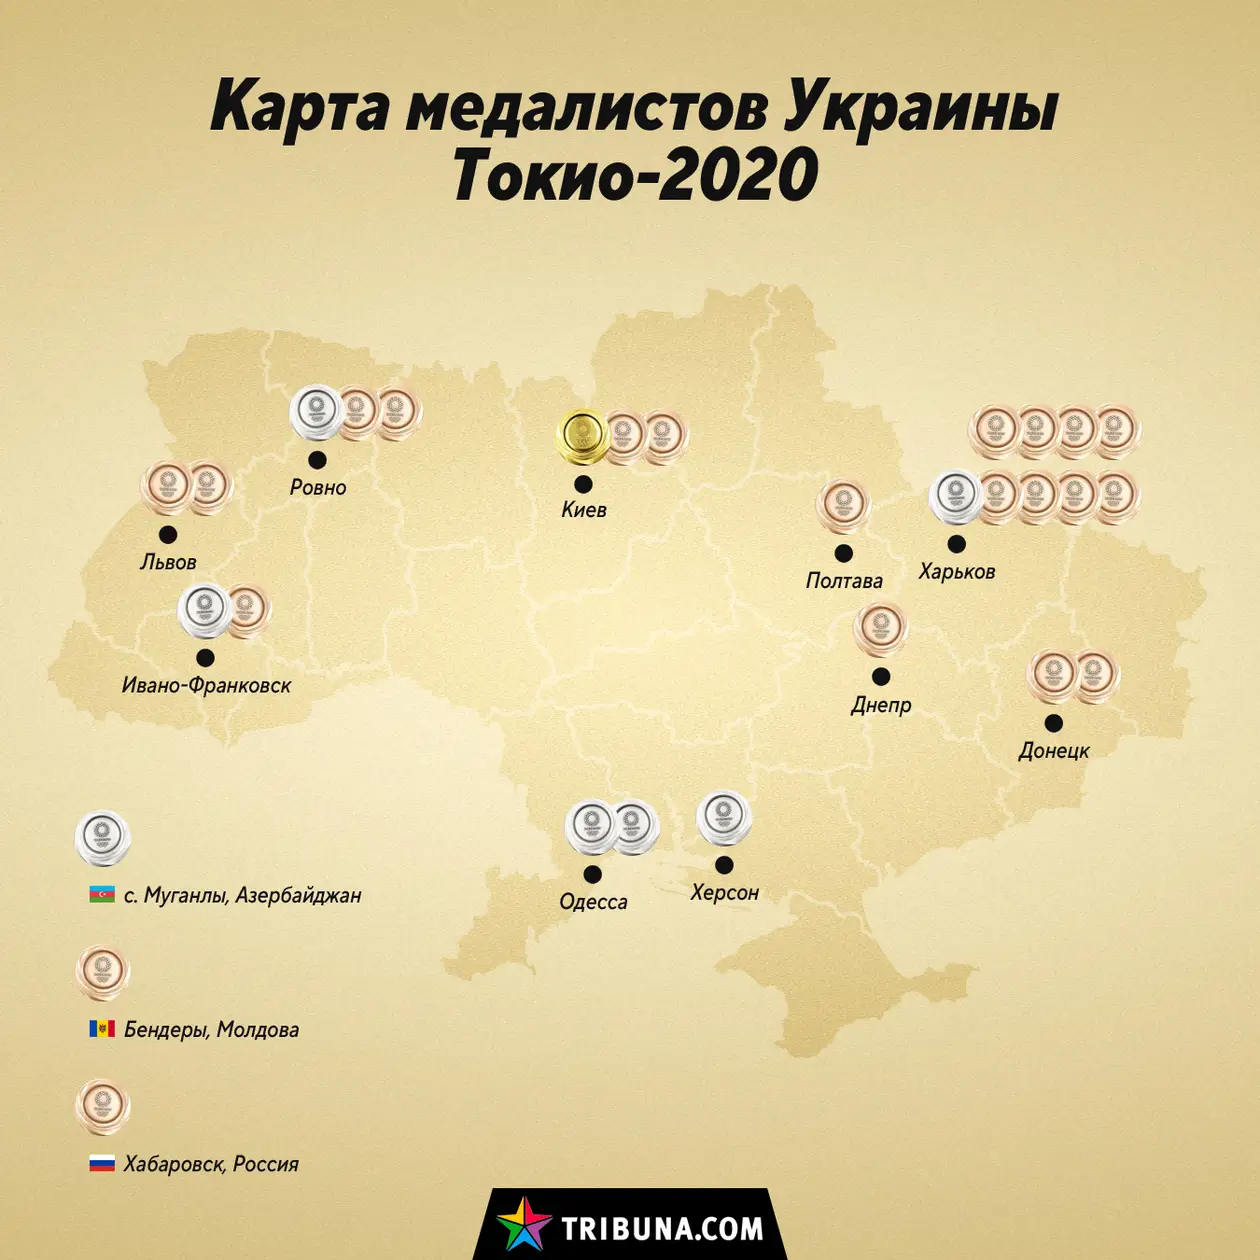 Карта украинских медалистов Олимпиады-2020